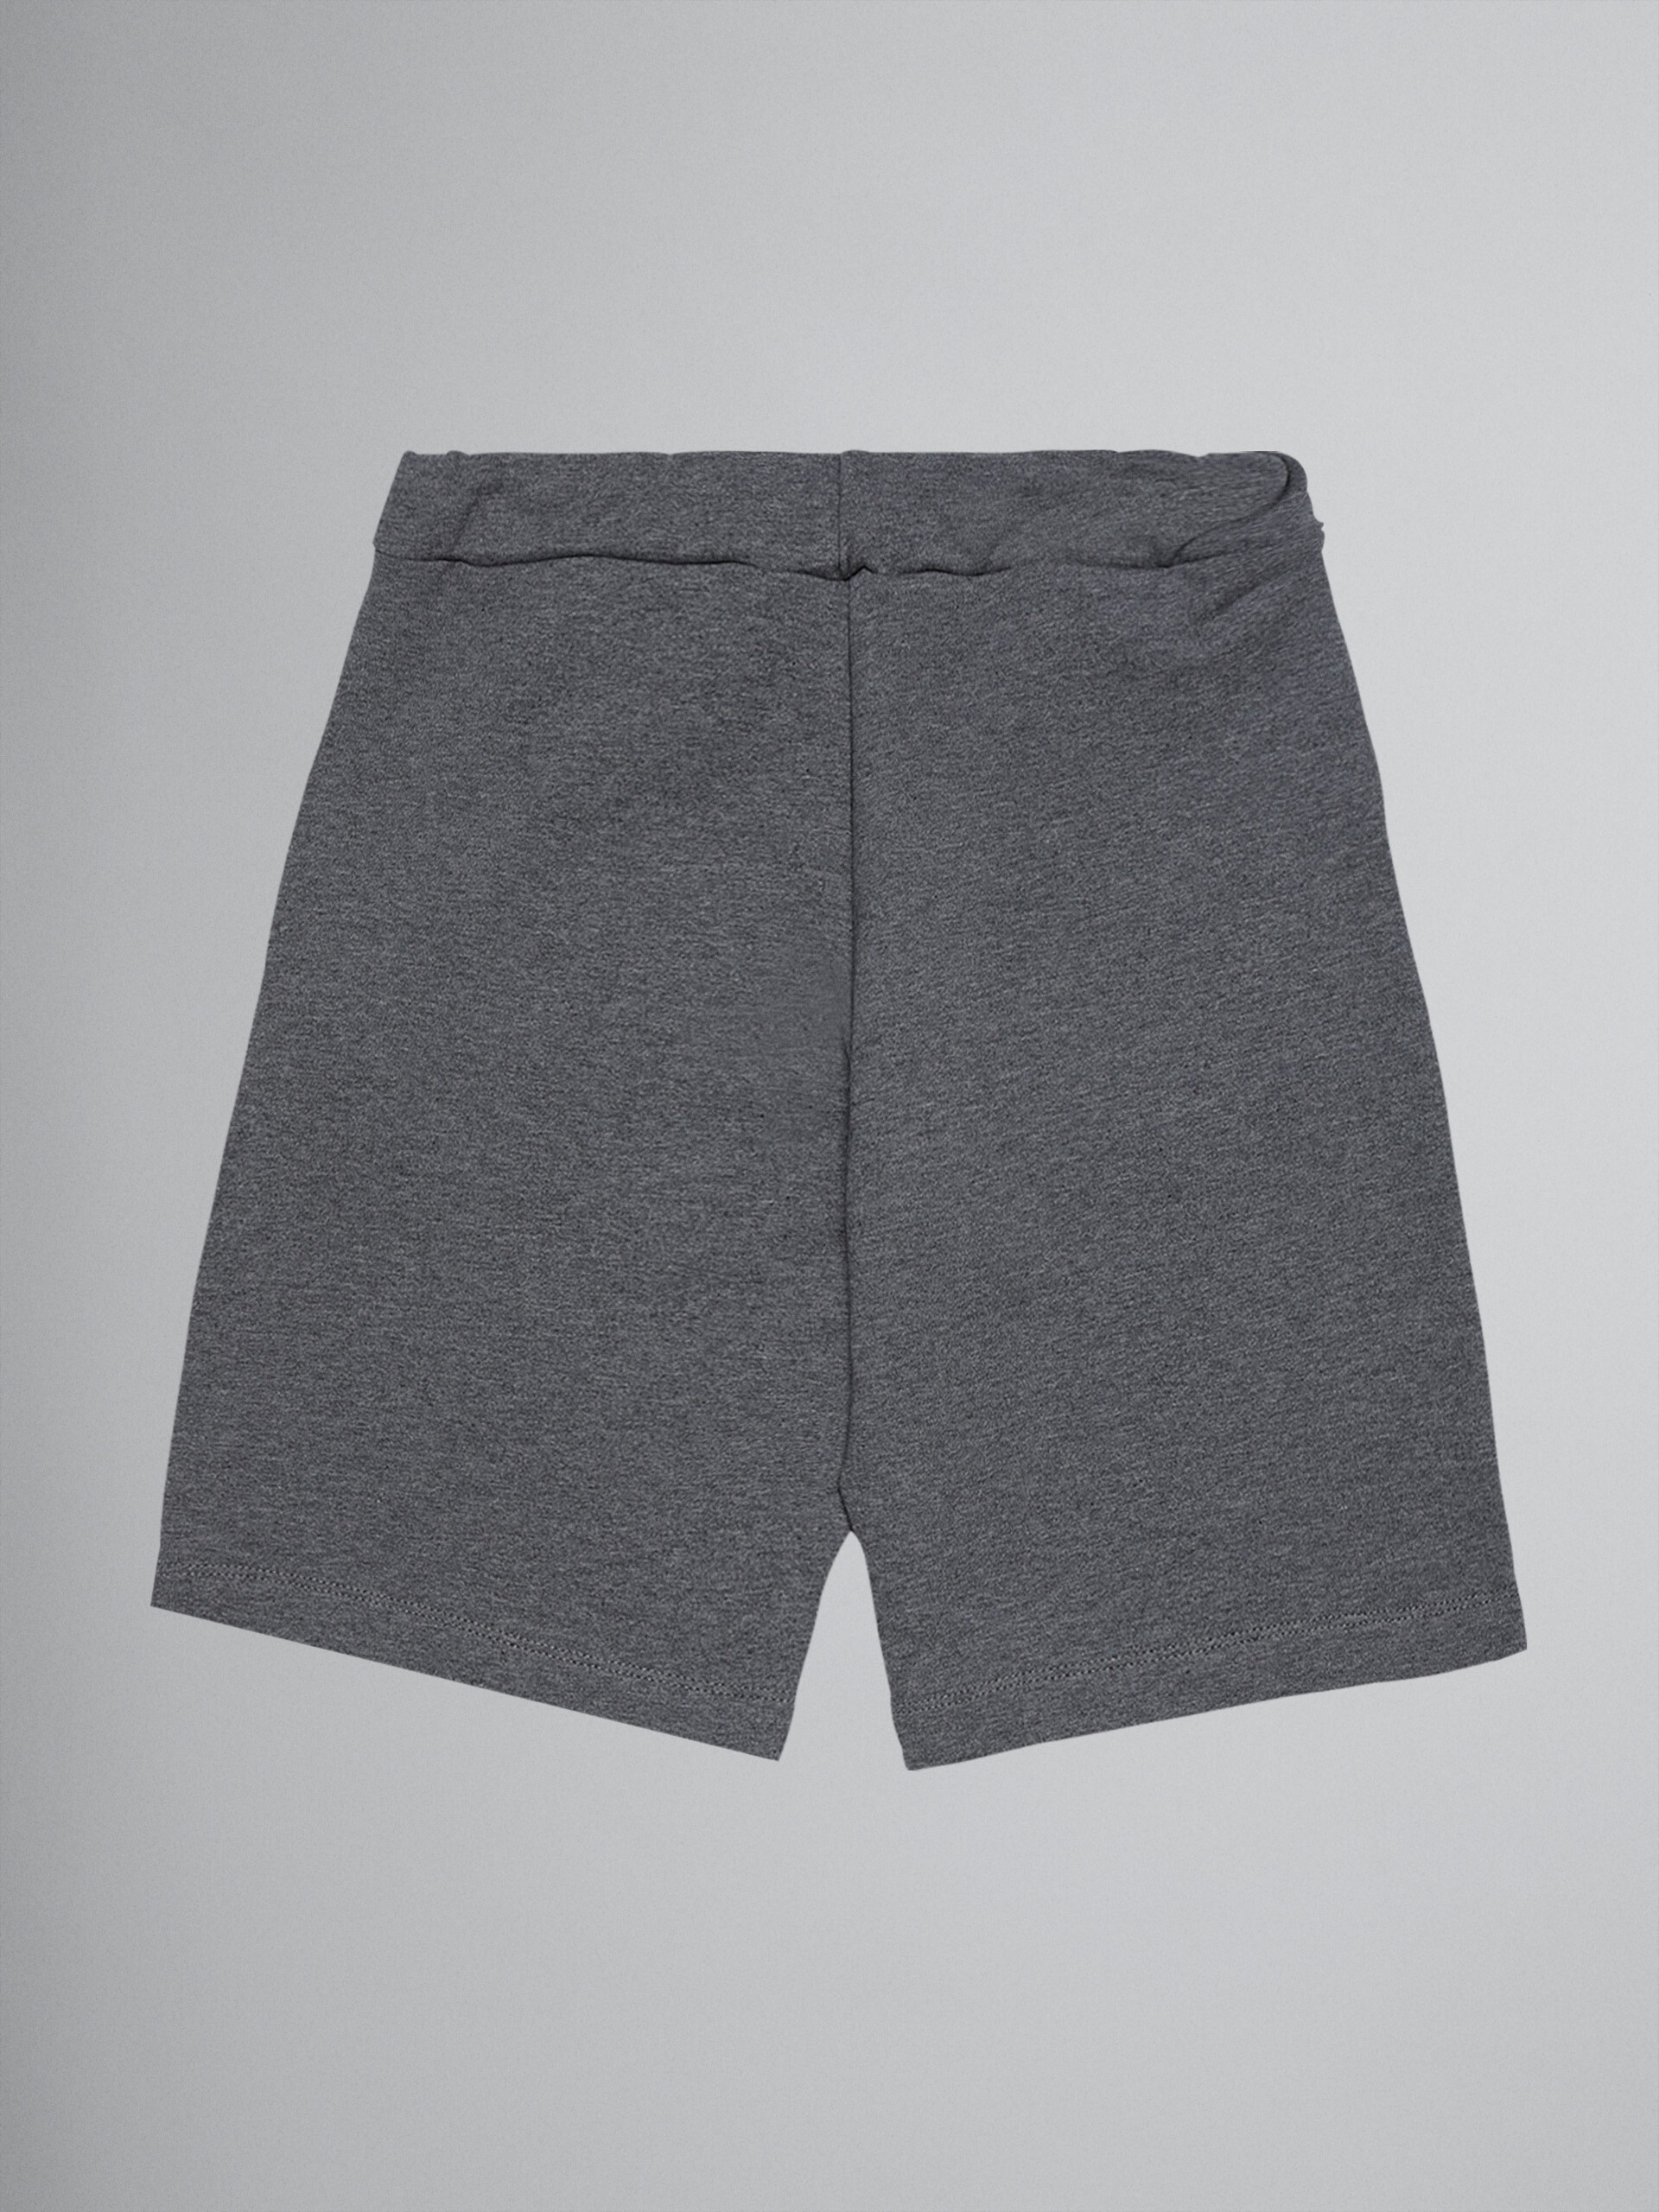 Mélange sweatshirt cotton short track pants - Pants - Image 2